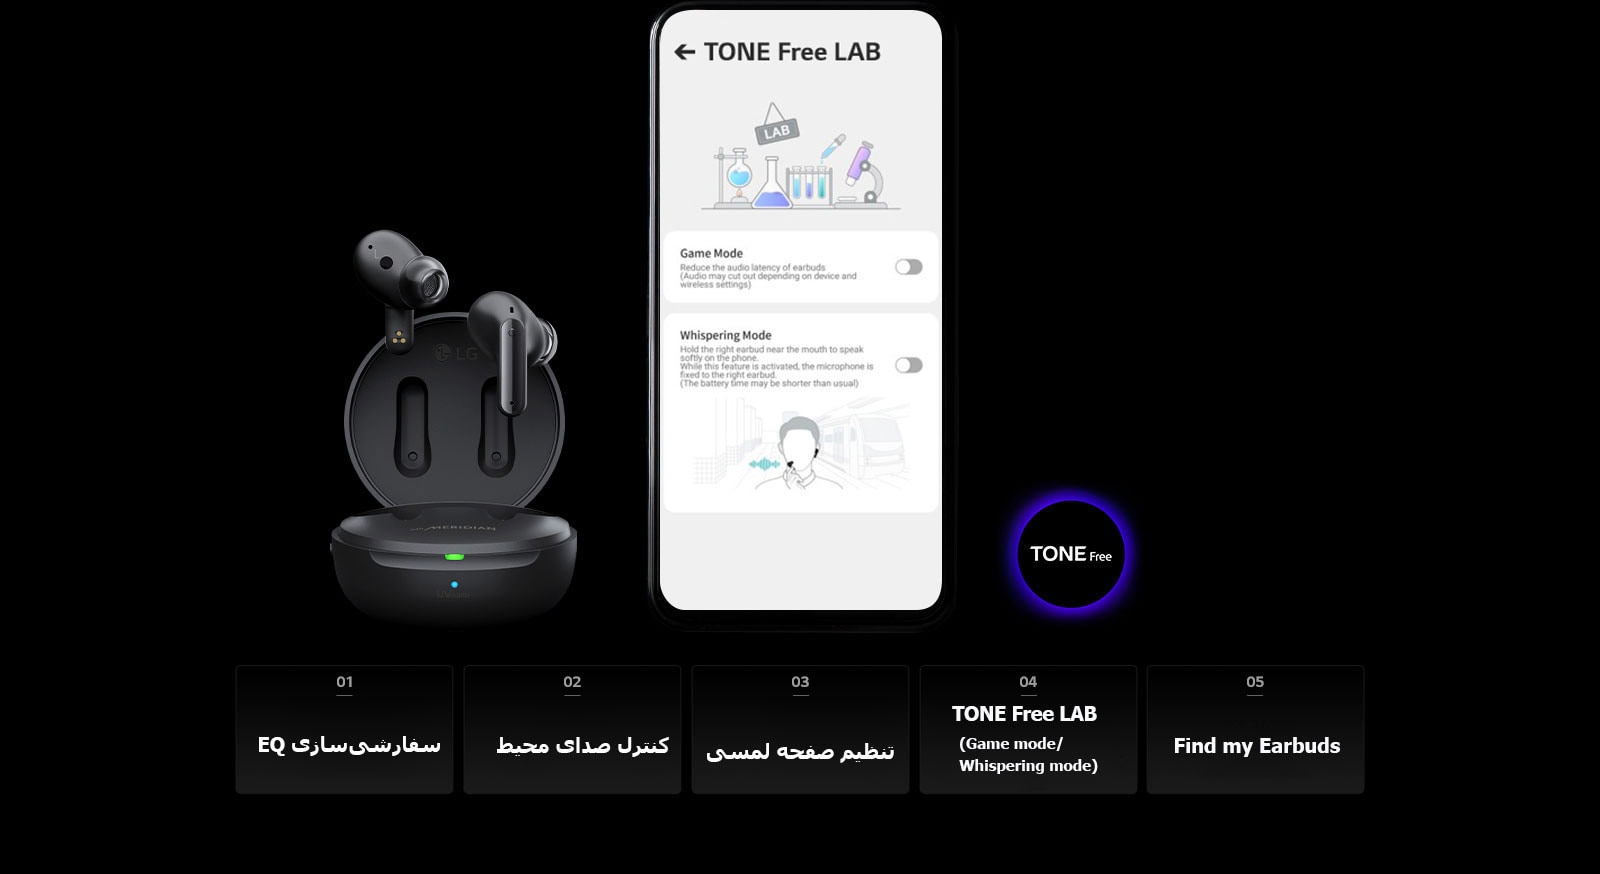 تصویری از صفحه TONE Free LAB در تلفن همراه و محصول TONE Free در کنار آن. 